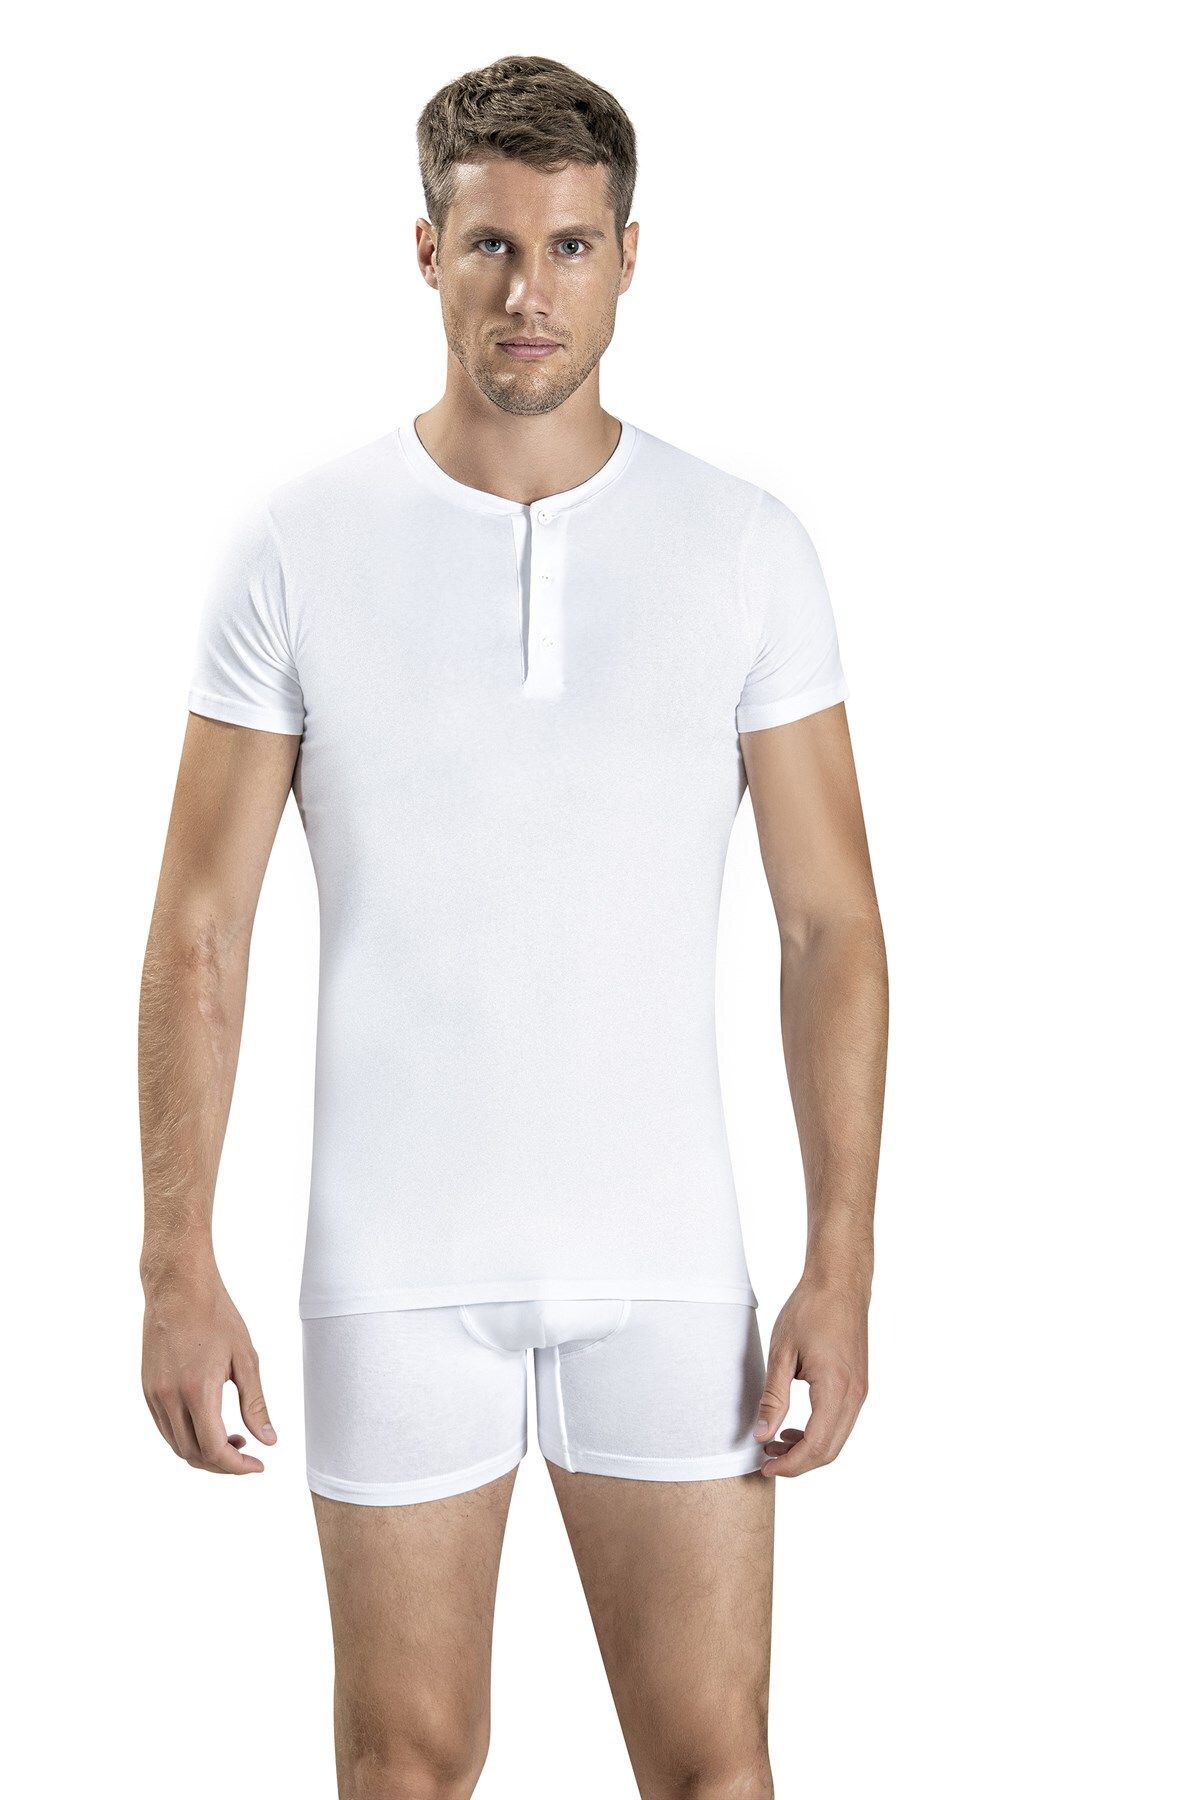 Jiber Erkek Beyaz Düğmeli T-shirt 128